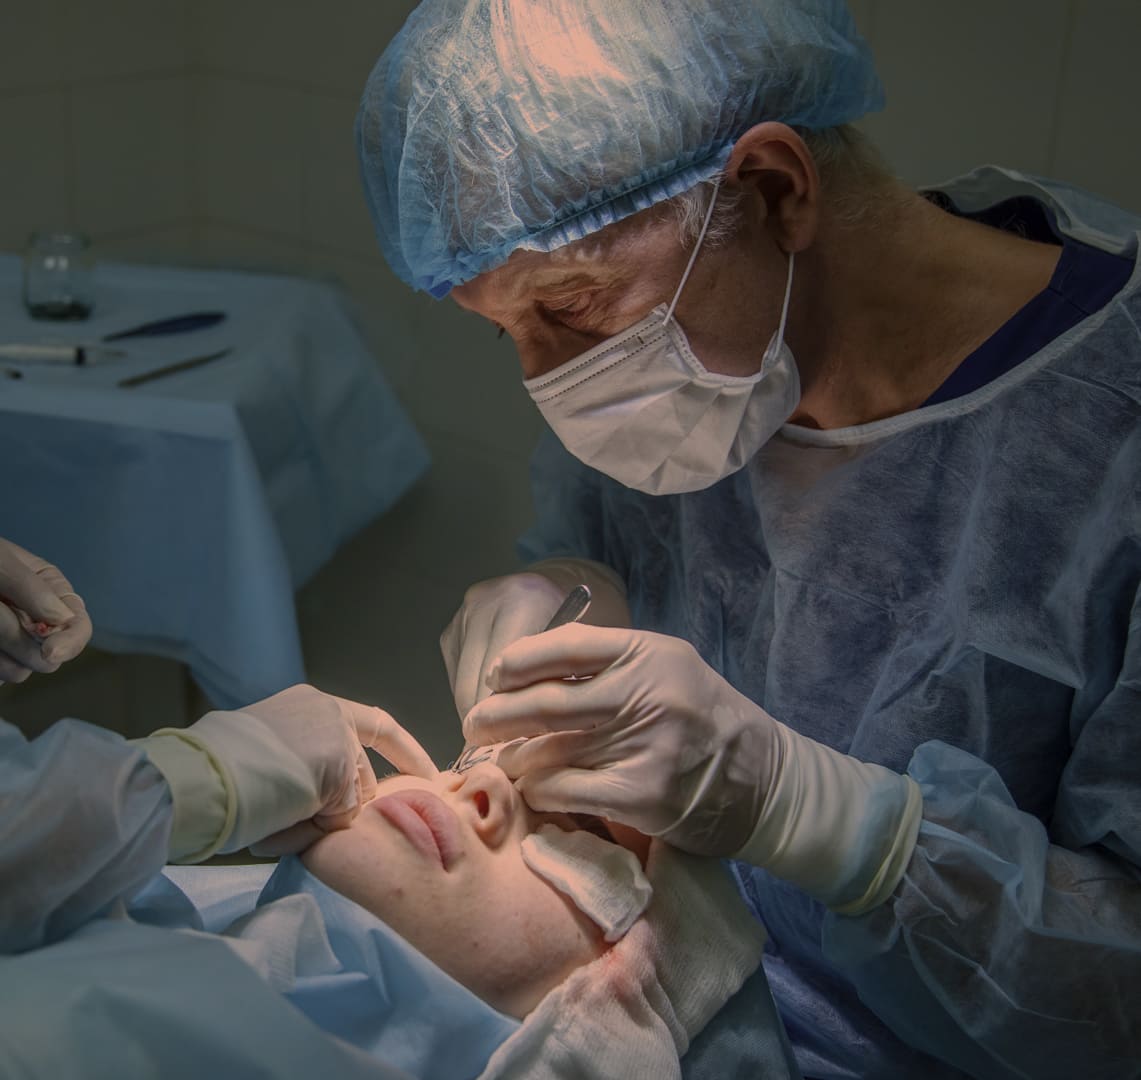 Imagem de profissional médico realizando procedimento cirúrgico em paciente. A fotografia retrata o transplante de córnea artificial nacional criada pelos cientistas da Unifesp.